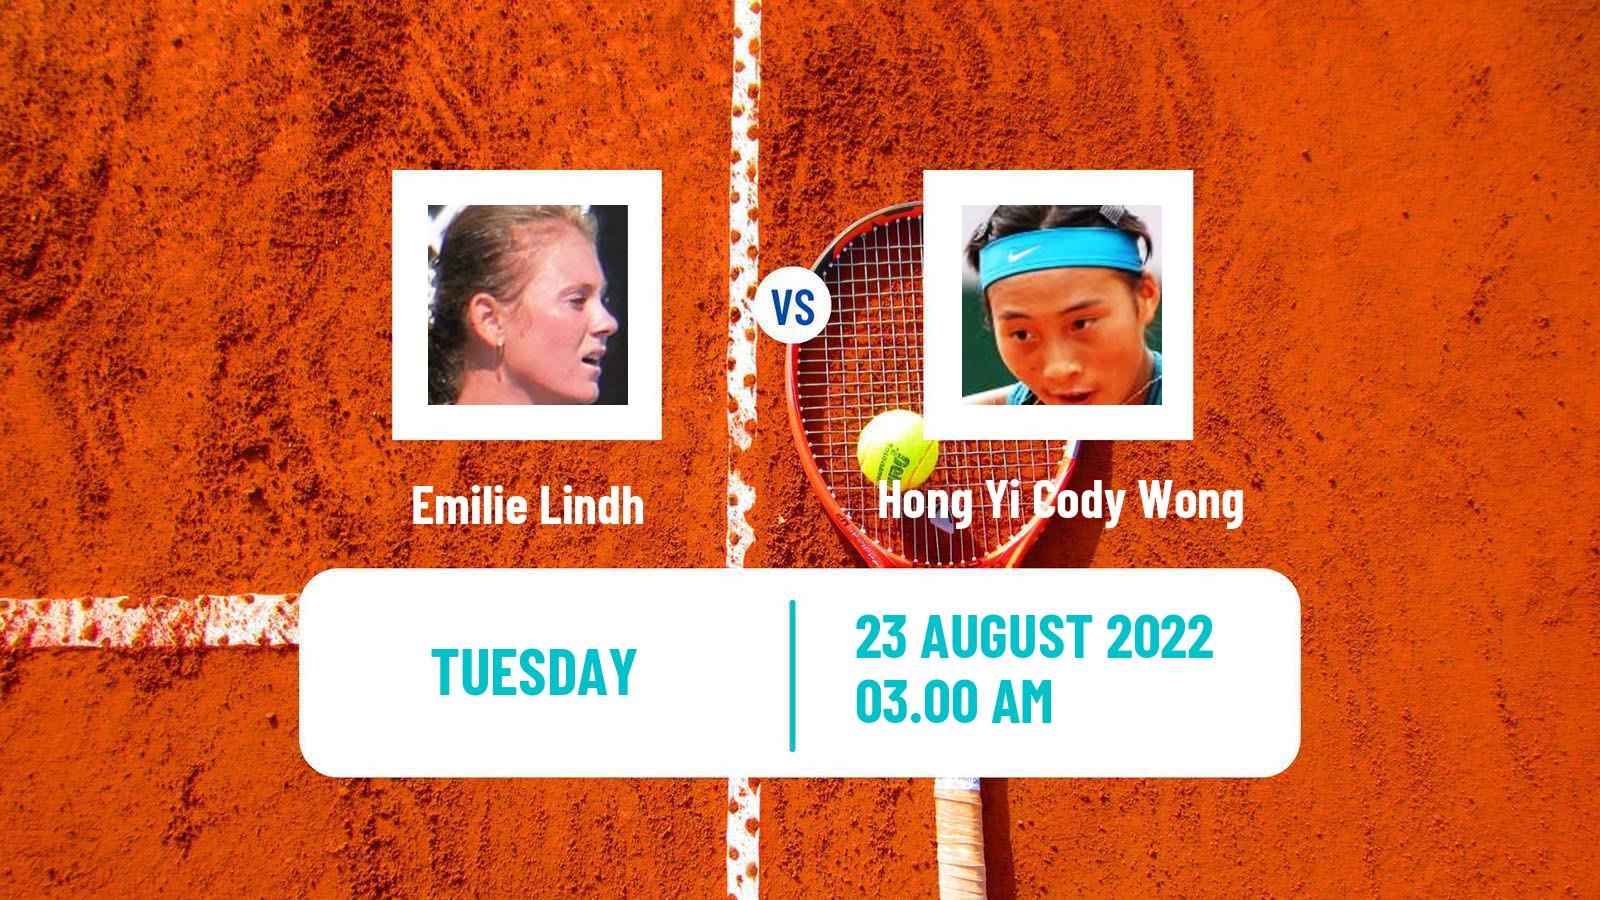 Tennis ITF Tournaments Emilie Lindh - Hong Yi Cody Wong